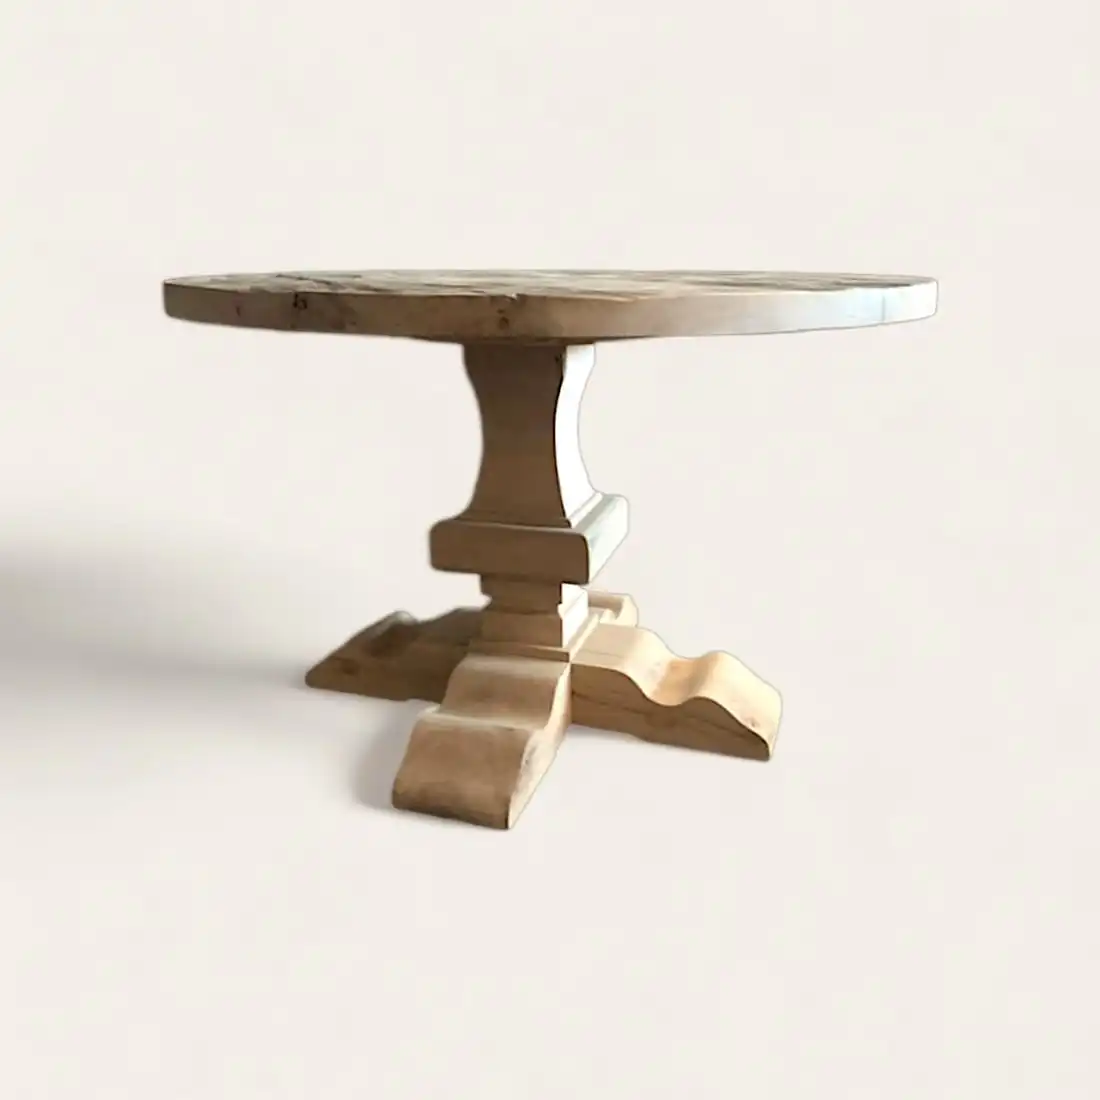  Une table ronde en bois rustique avec un piètement en bois. 